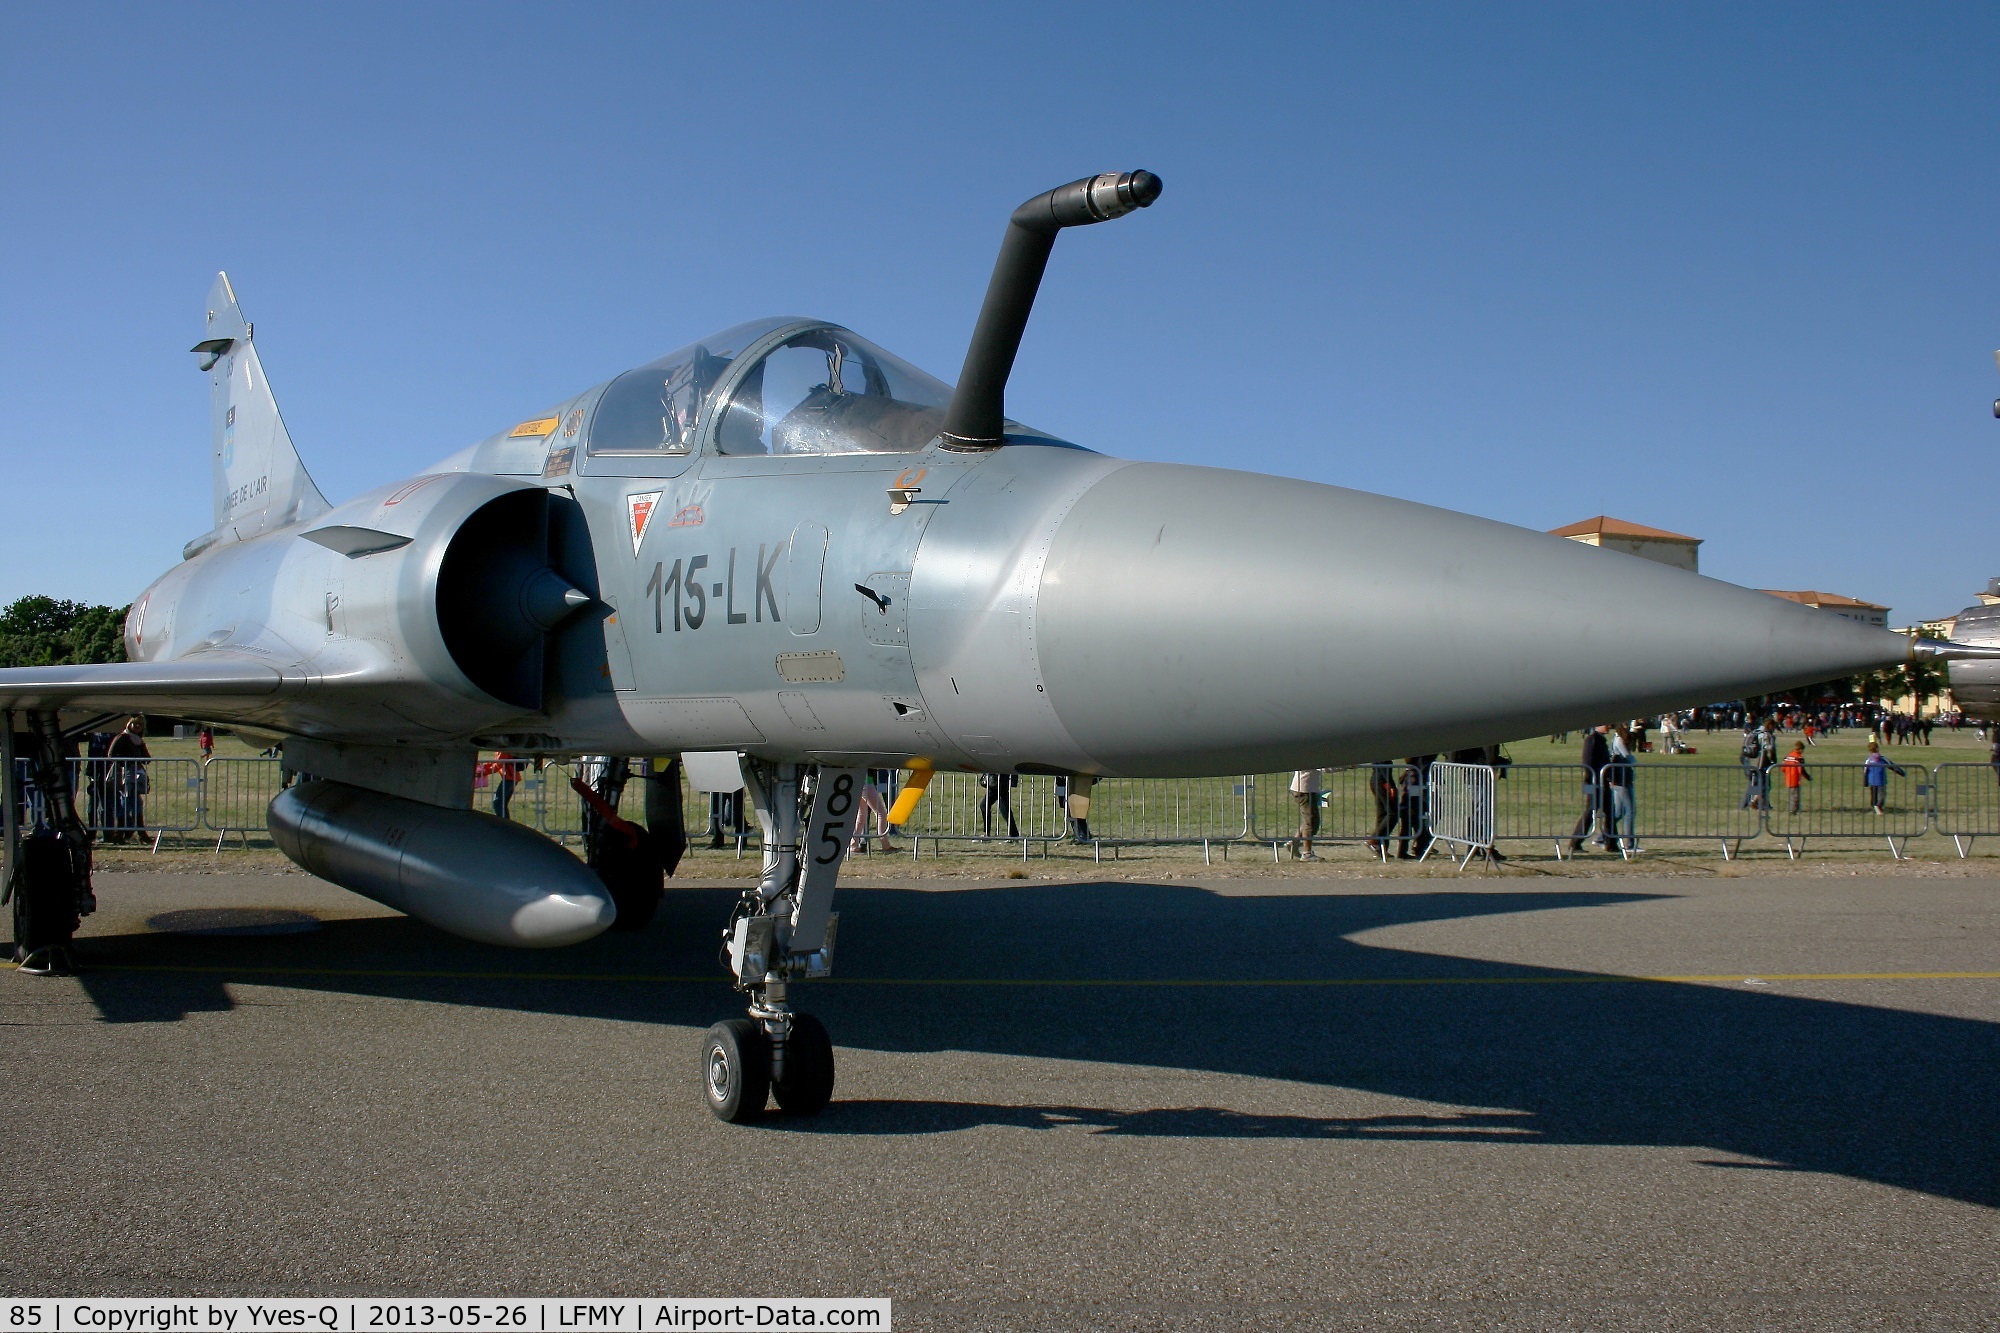 85, Dassault Mirage 2000C C/N 333, Dassault Mirage 2000 C (115-LK), Static Display Open Day 2013, Salon de Provence Air Base 701 (LFMY)